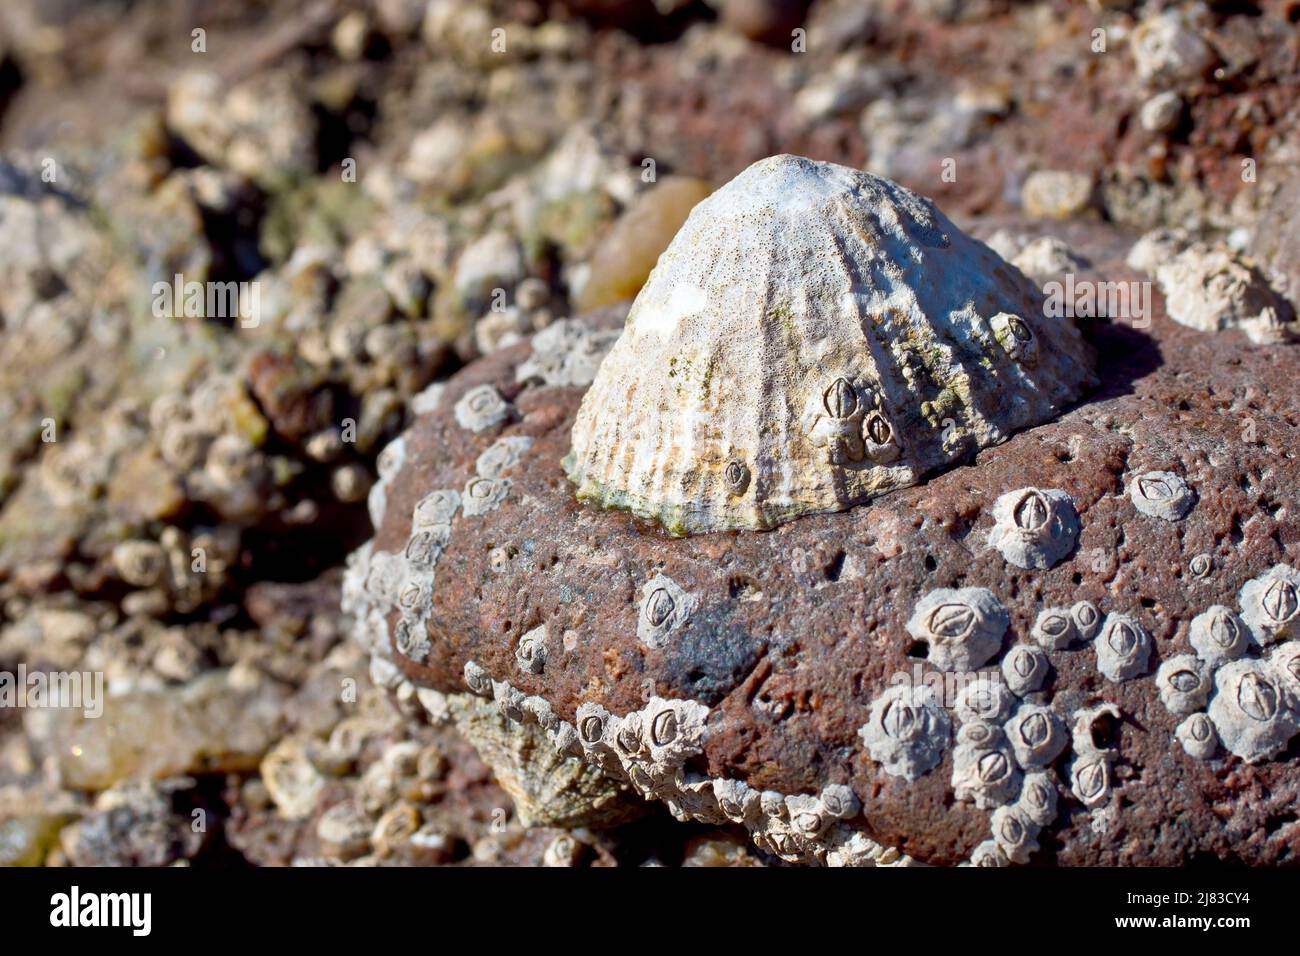 Cerca de un limpet (patella vulgata) pegado a una roca roja con incrustaciones de barnacle en la playa con marea baja. Foto de stock